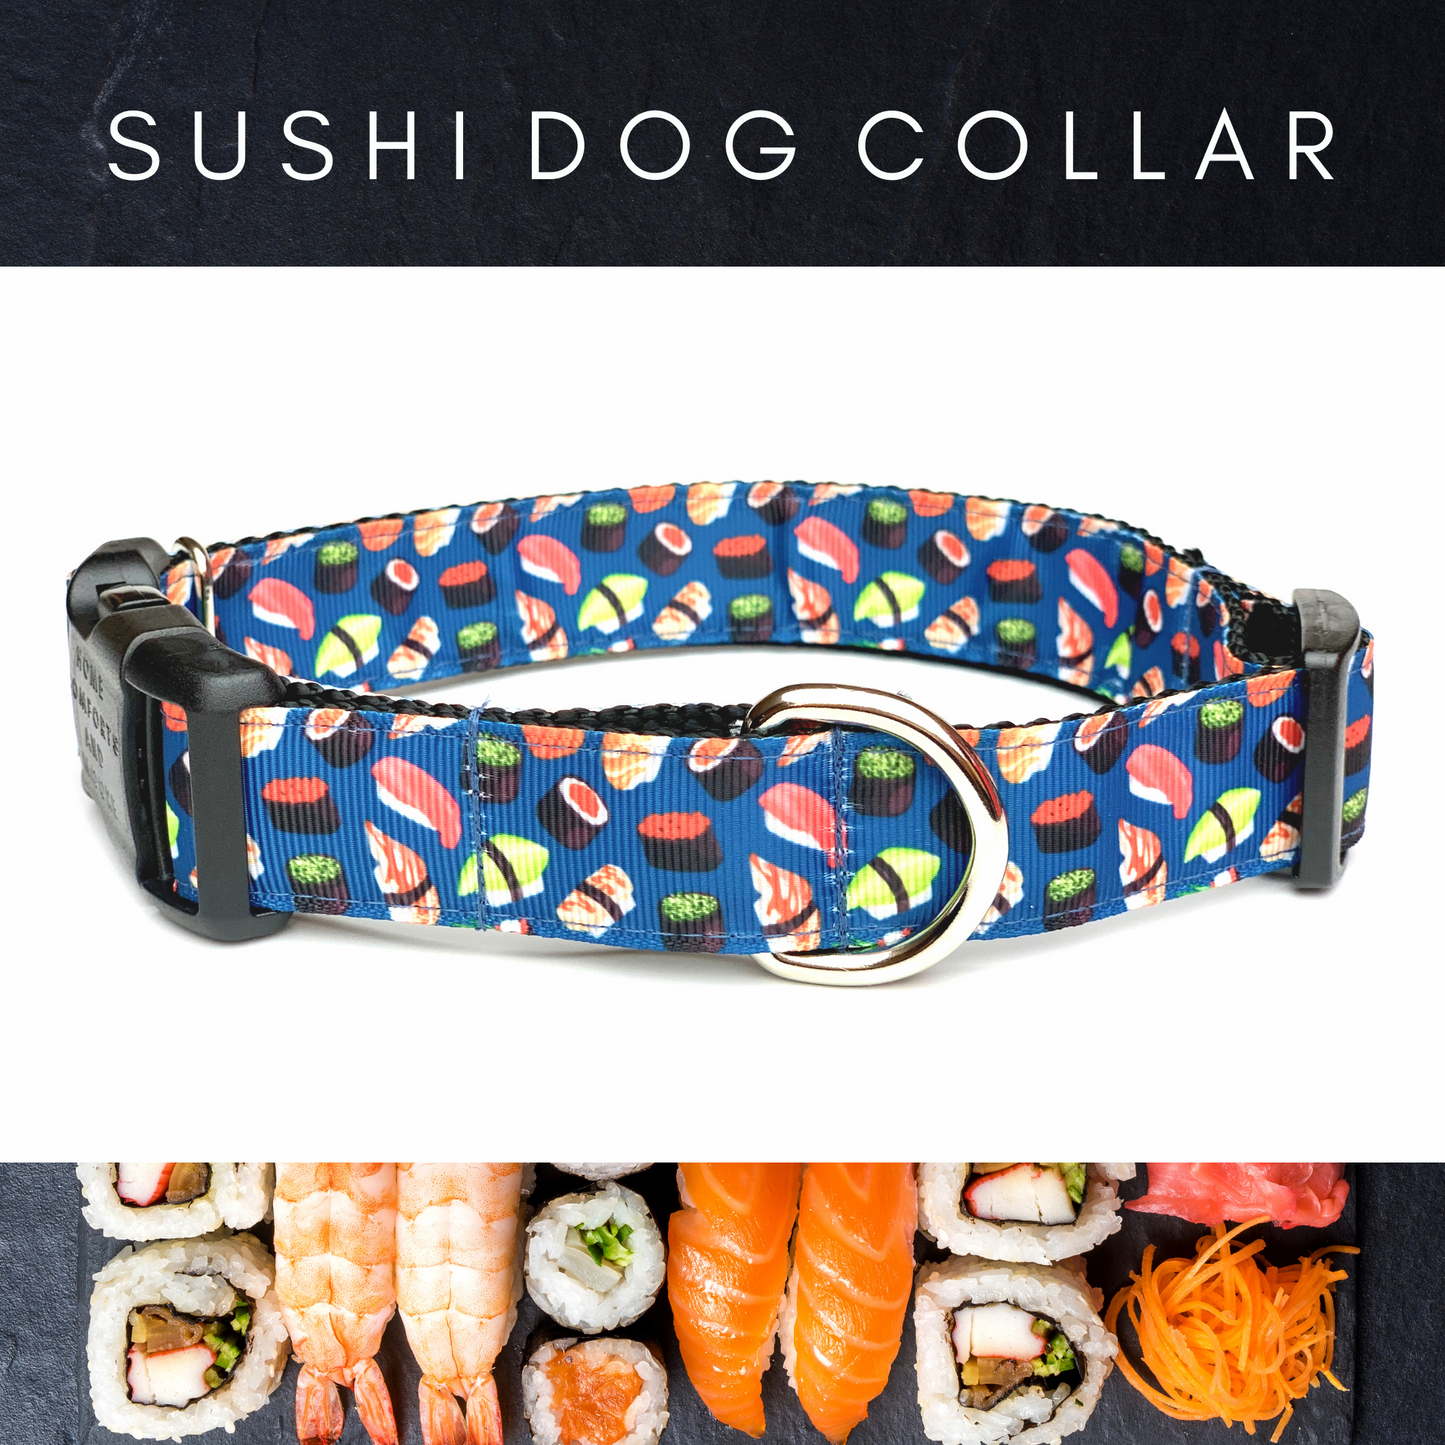 Sushi Dog Collar